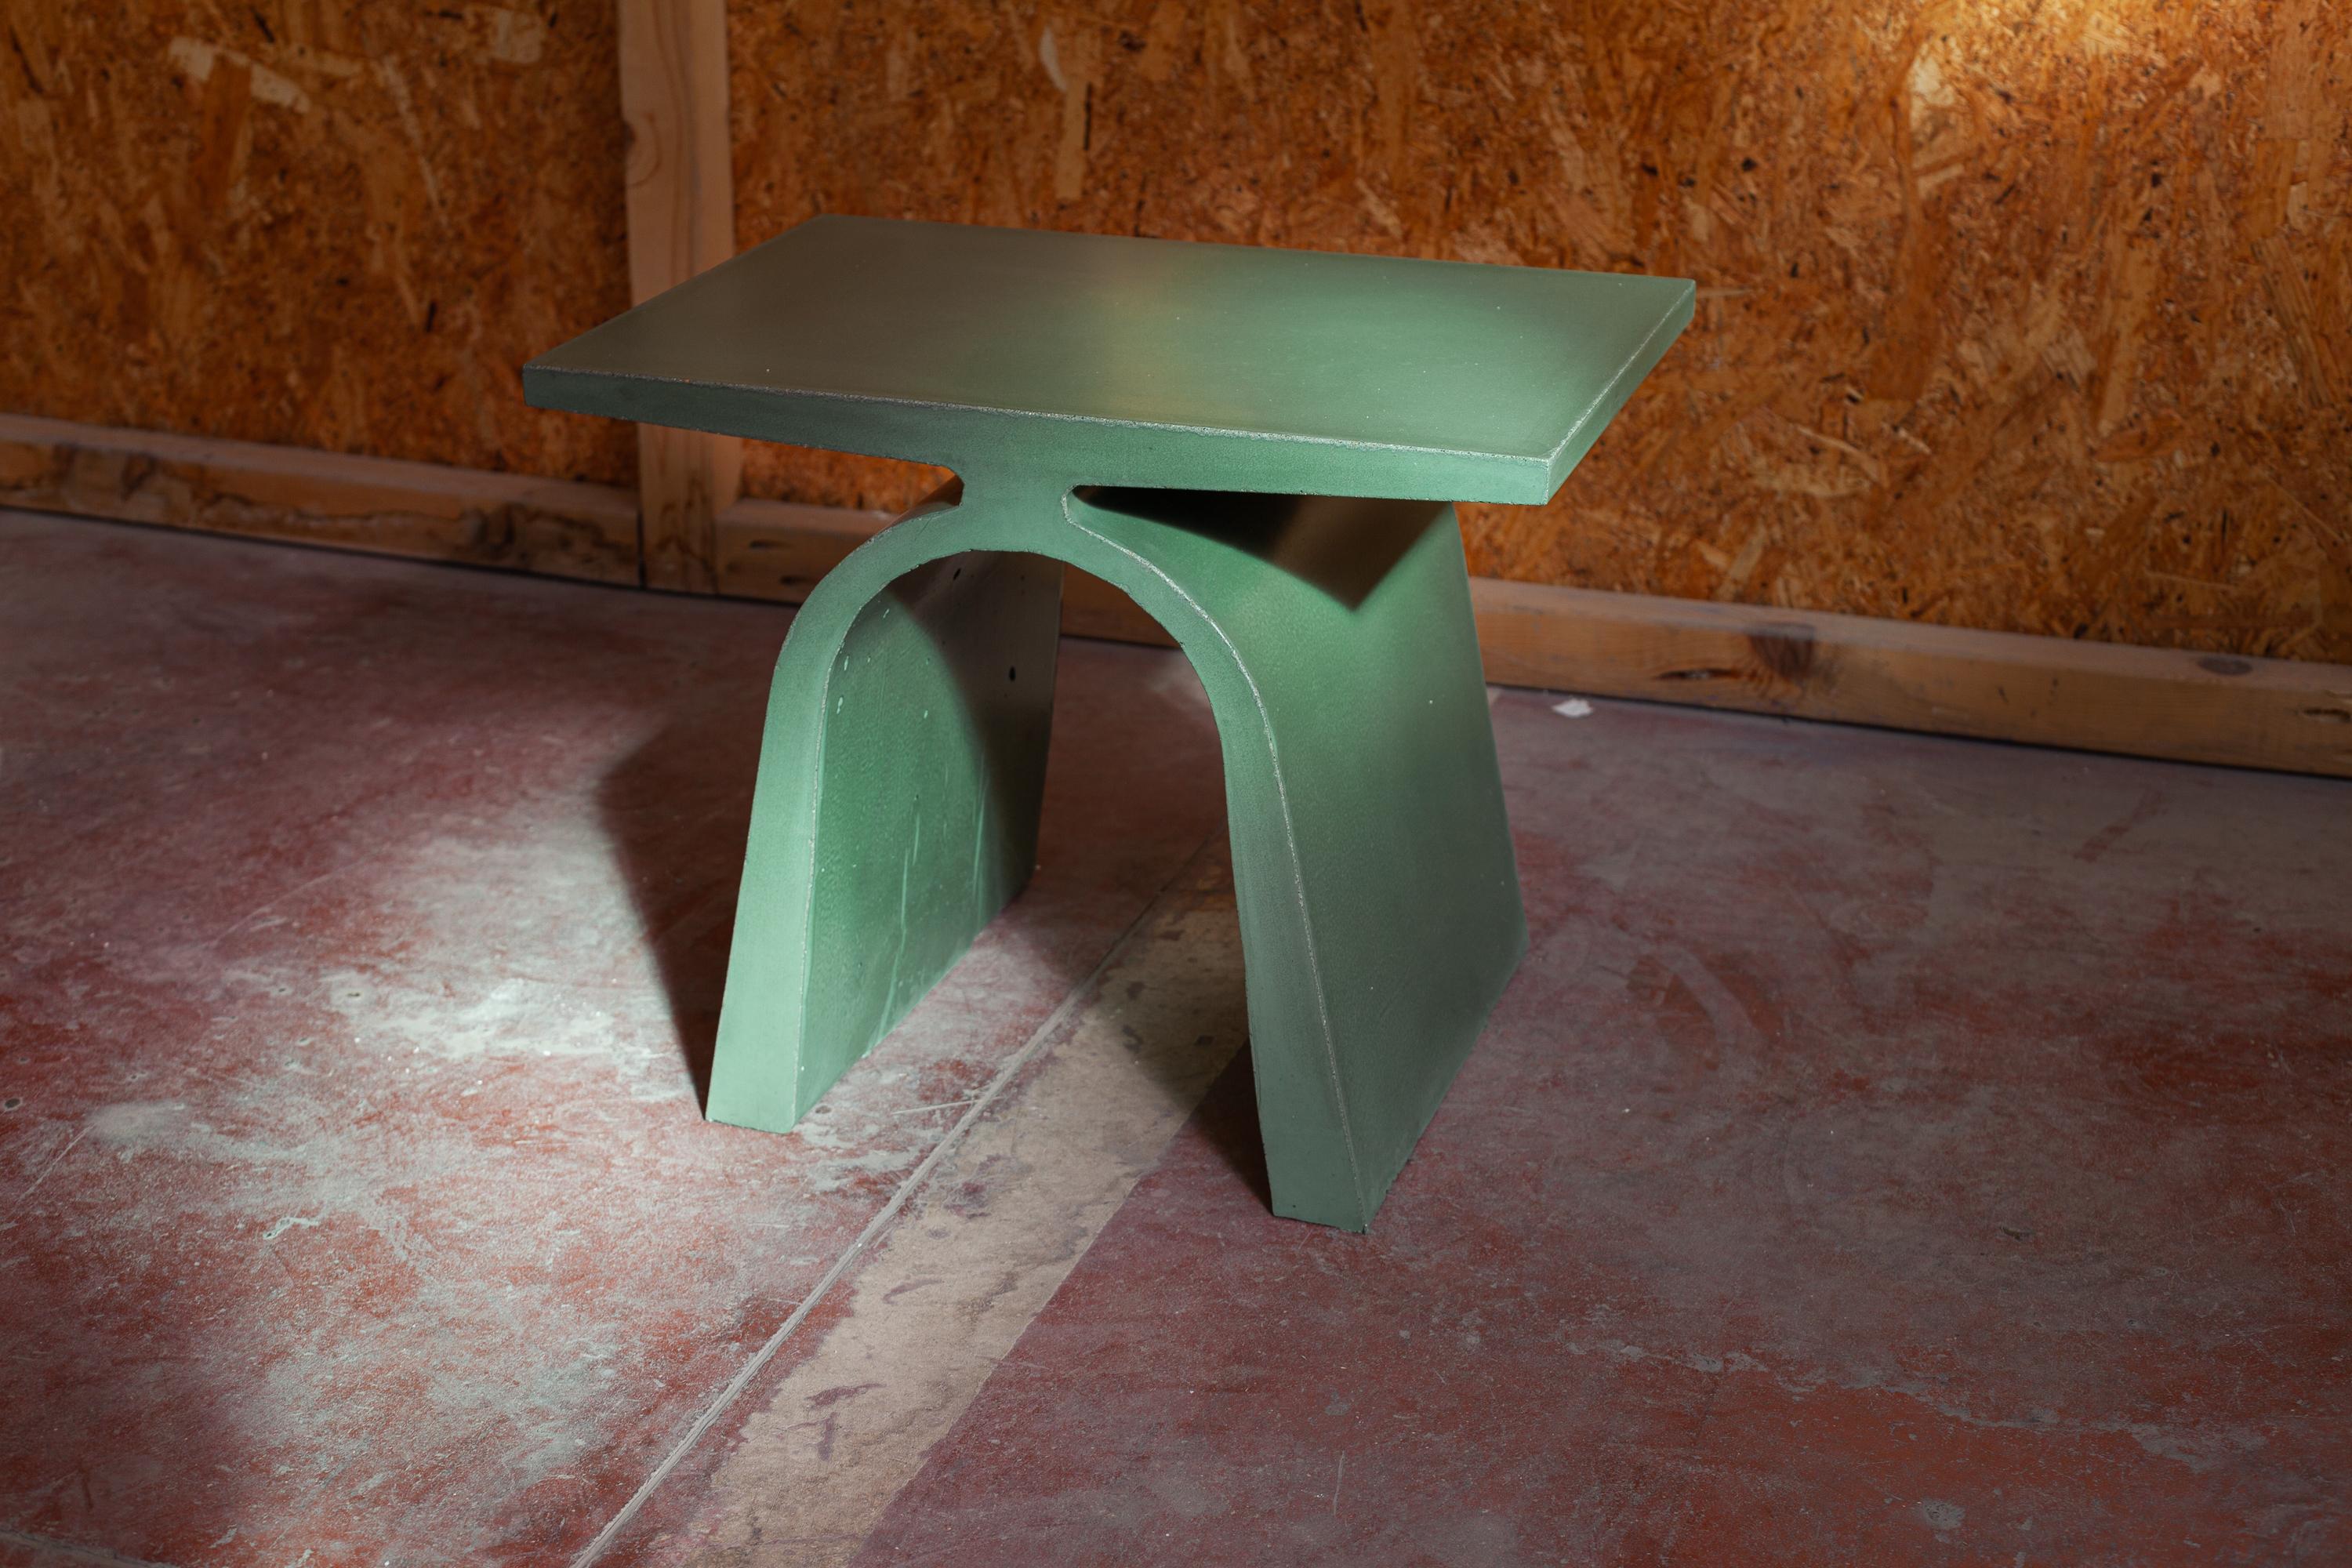 La table basse A fait partie de la collection Abecedario et marque le début d'un langage en ciment qui créera un alphabet en béton composé de tables et de tabourets coulés par une coulée de béton à l'intérieur d'un moule extrudé. 
Les produits de